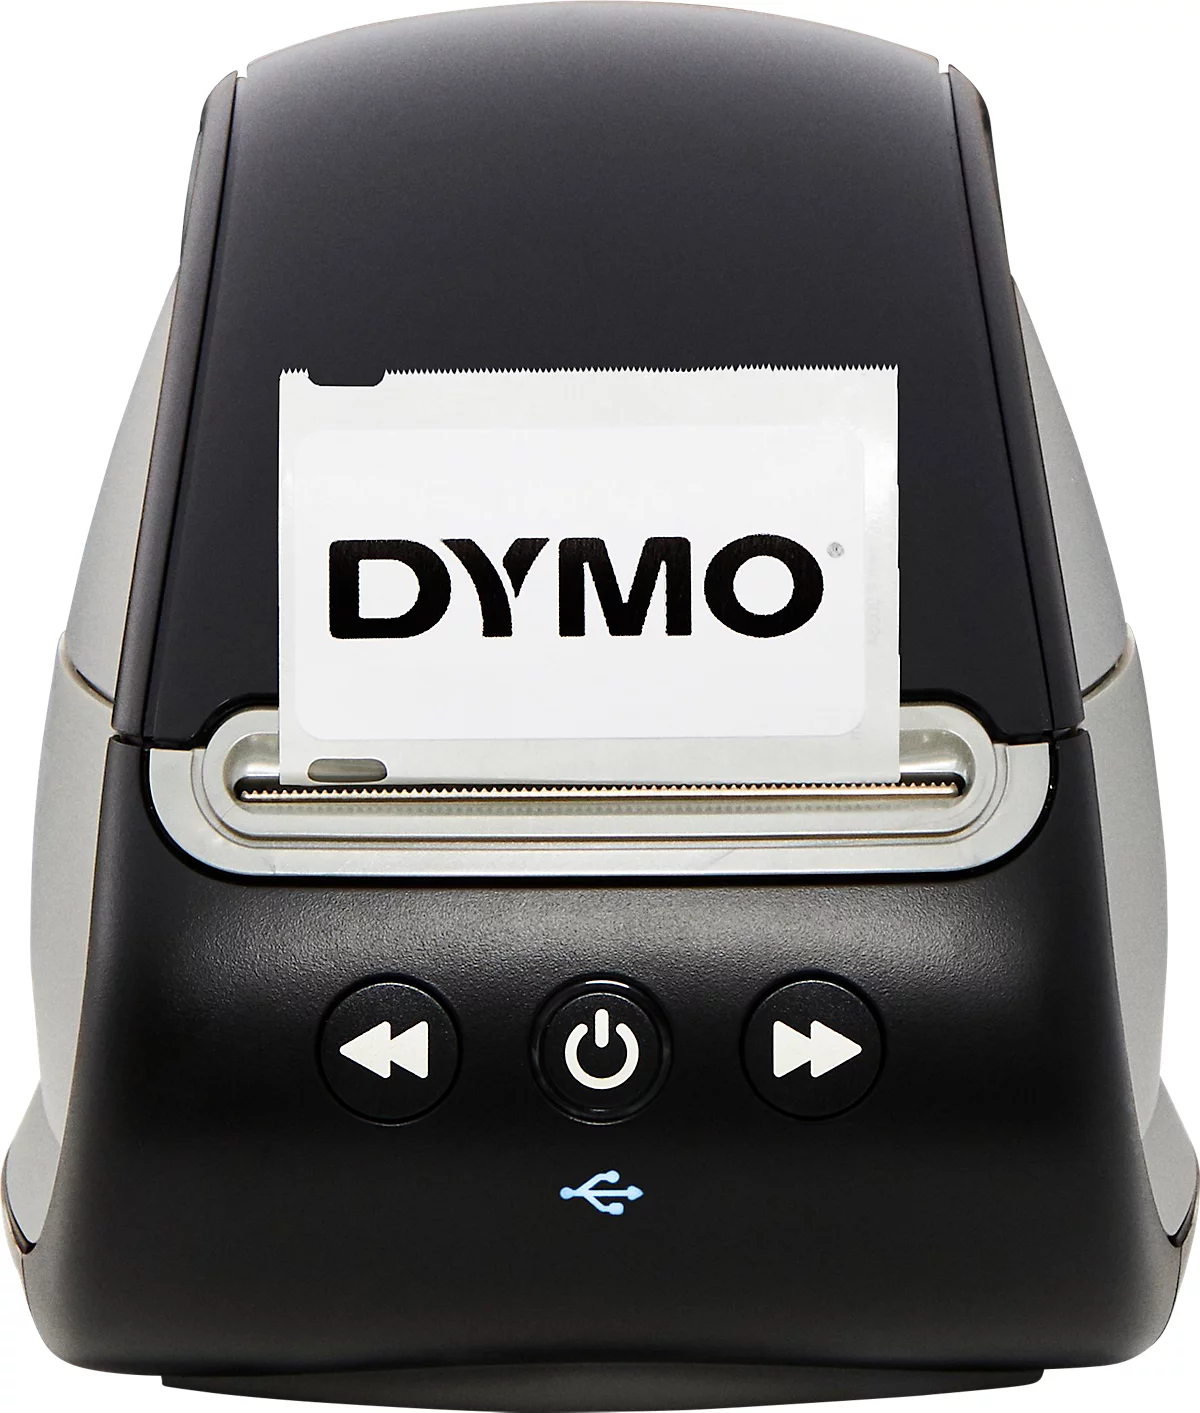 Etikettenprinter DYMO® LabelWriter™ 550, direct thermisch afdrukken, 300 x 300 dpi, 62 etiketten/min, functie, USB, etiketten incl. voordelig | Schäfer Shop